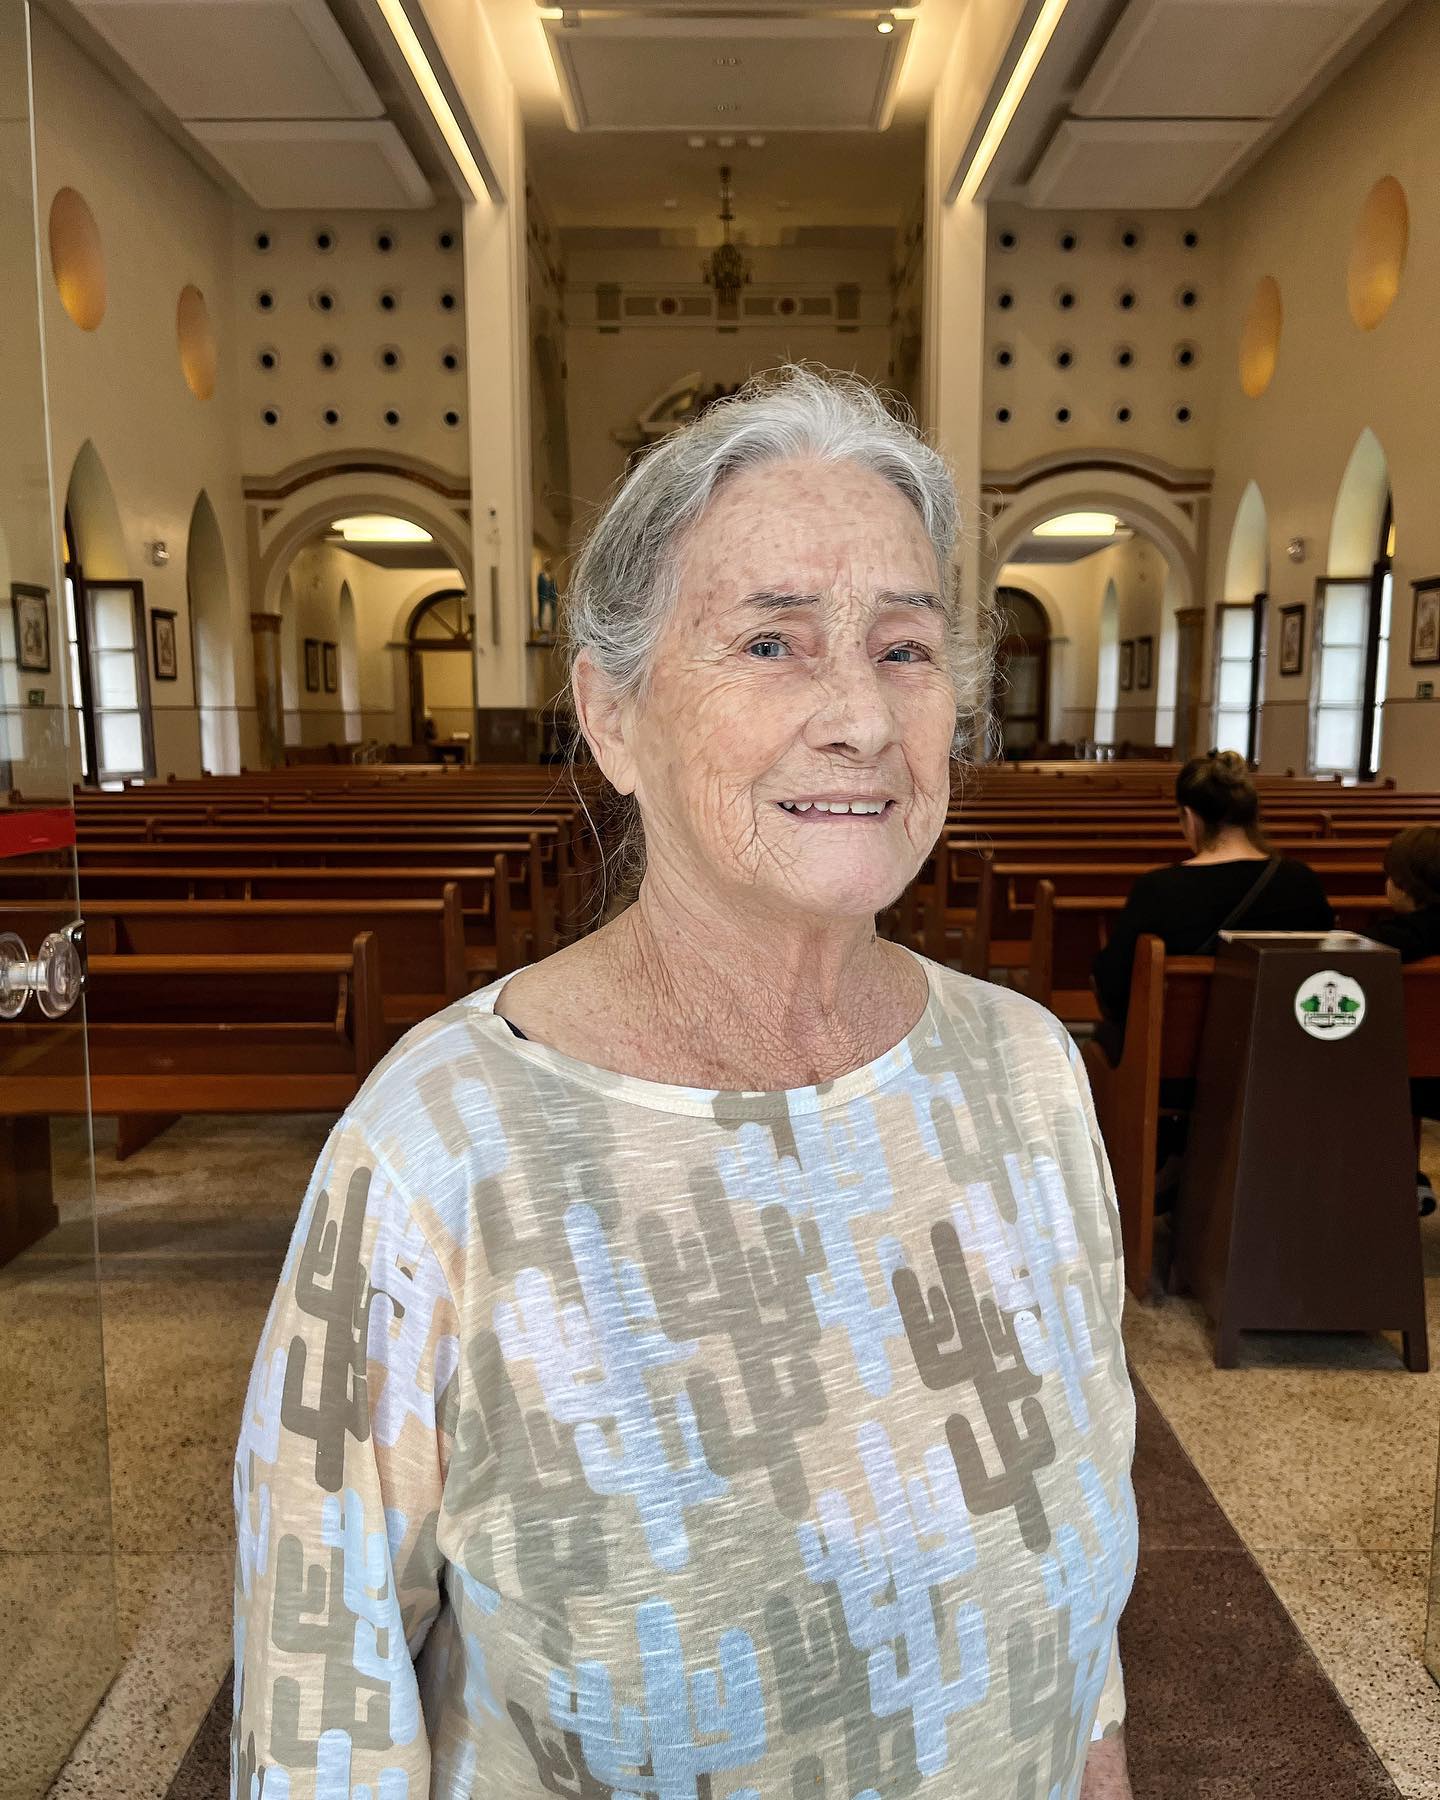 Nossa querida Rilda dos Santos (80+) em visita à Igreja Matriz de Casa Forte. #ConversandoComJesus
⛪️ 

#60+
#SessentaMa